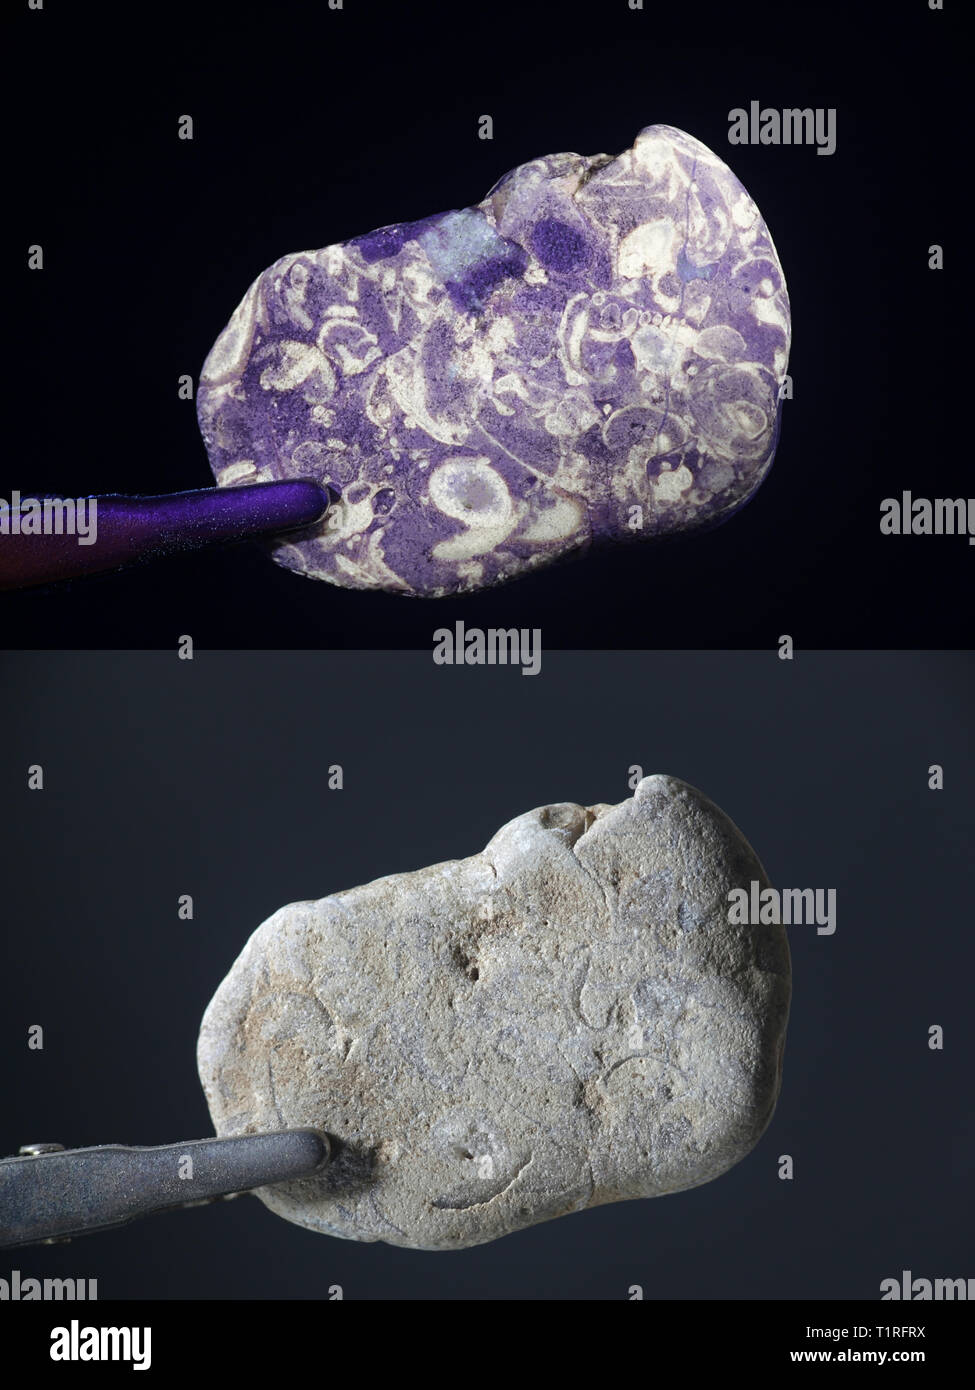 Fossiles fluorescents photographié à la lumière ultraviolette (365 nm). Image du bas montrant même échantillon dans la lumière du jour. Banque D'Images